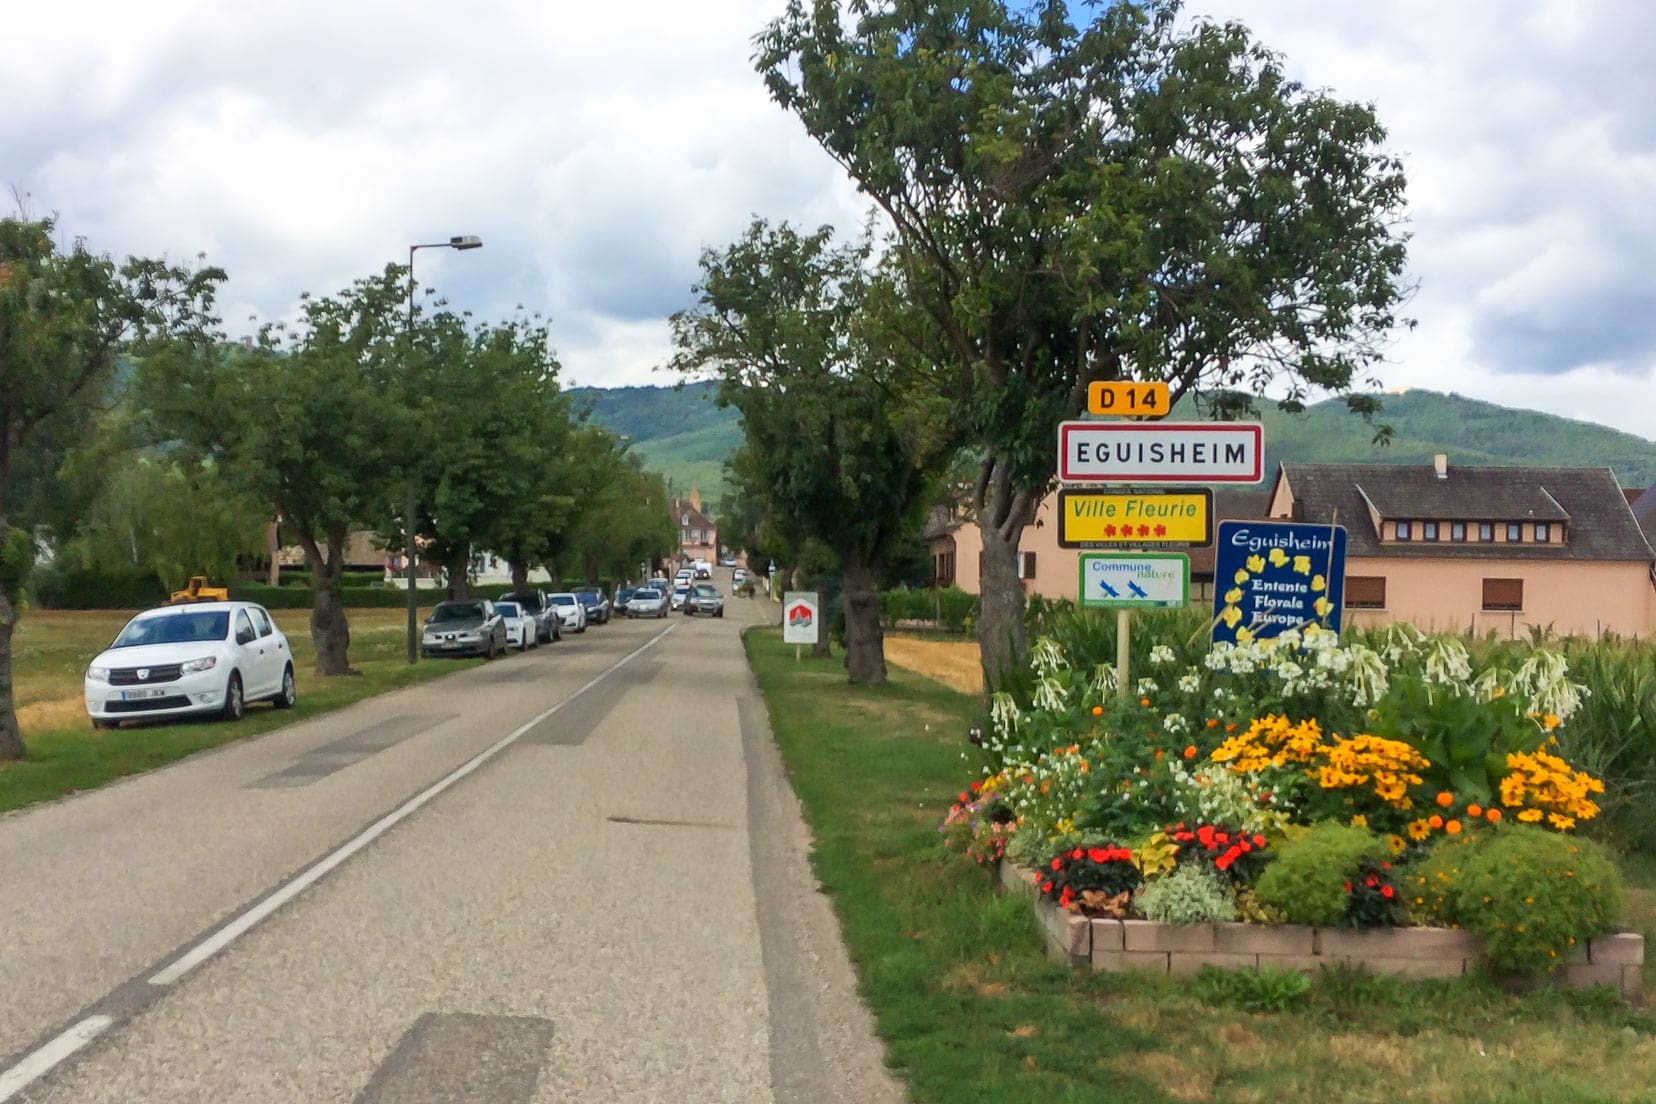 Eguisheim-4-star-village